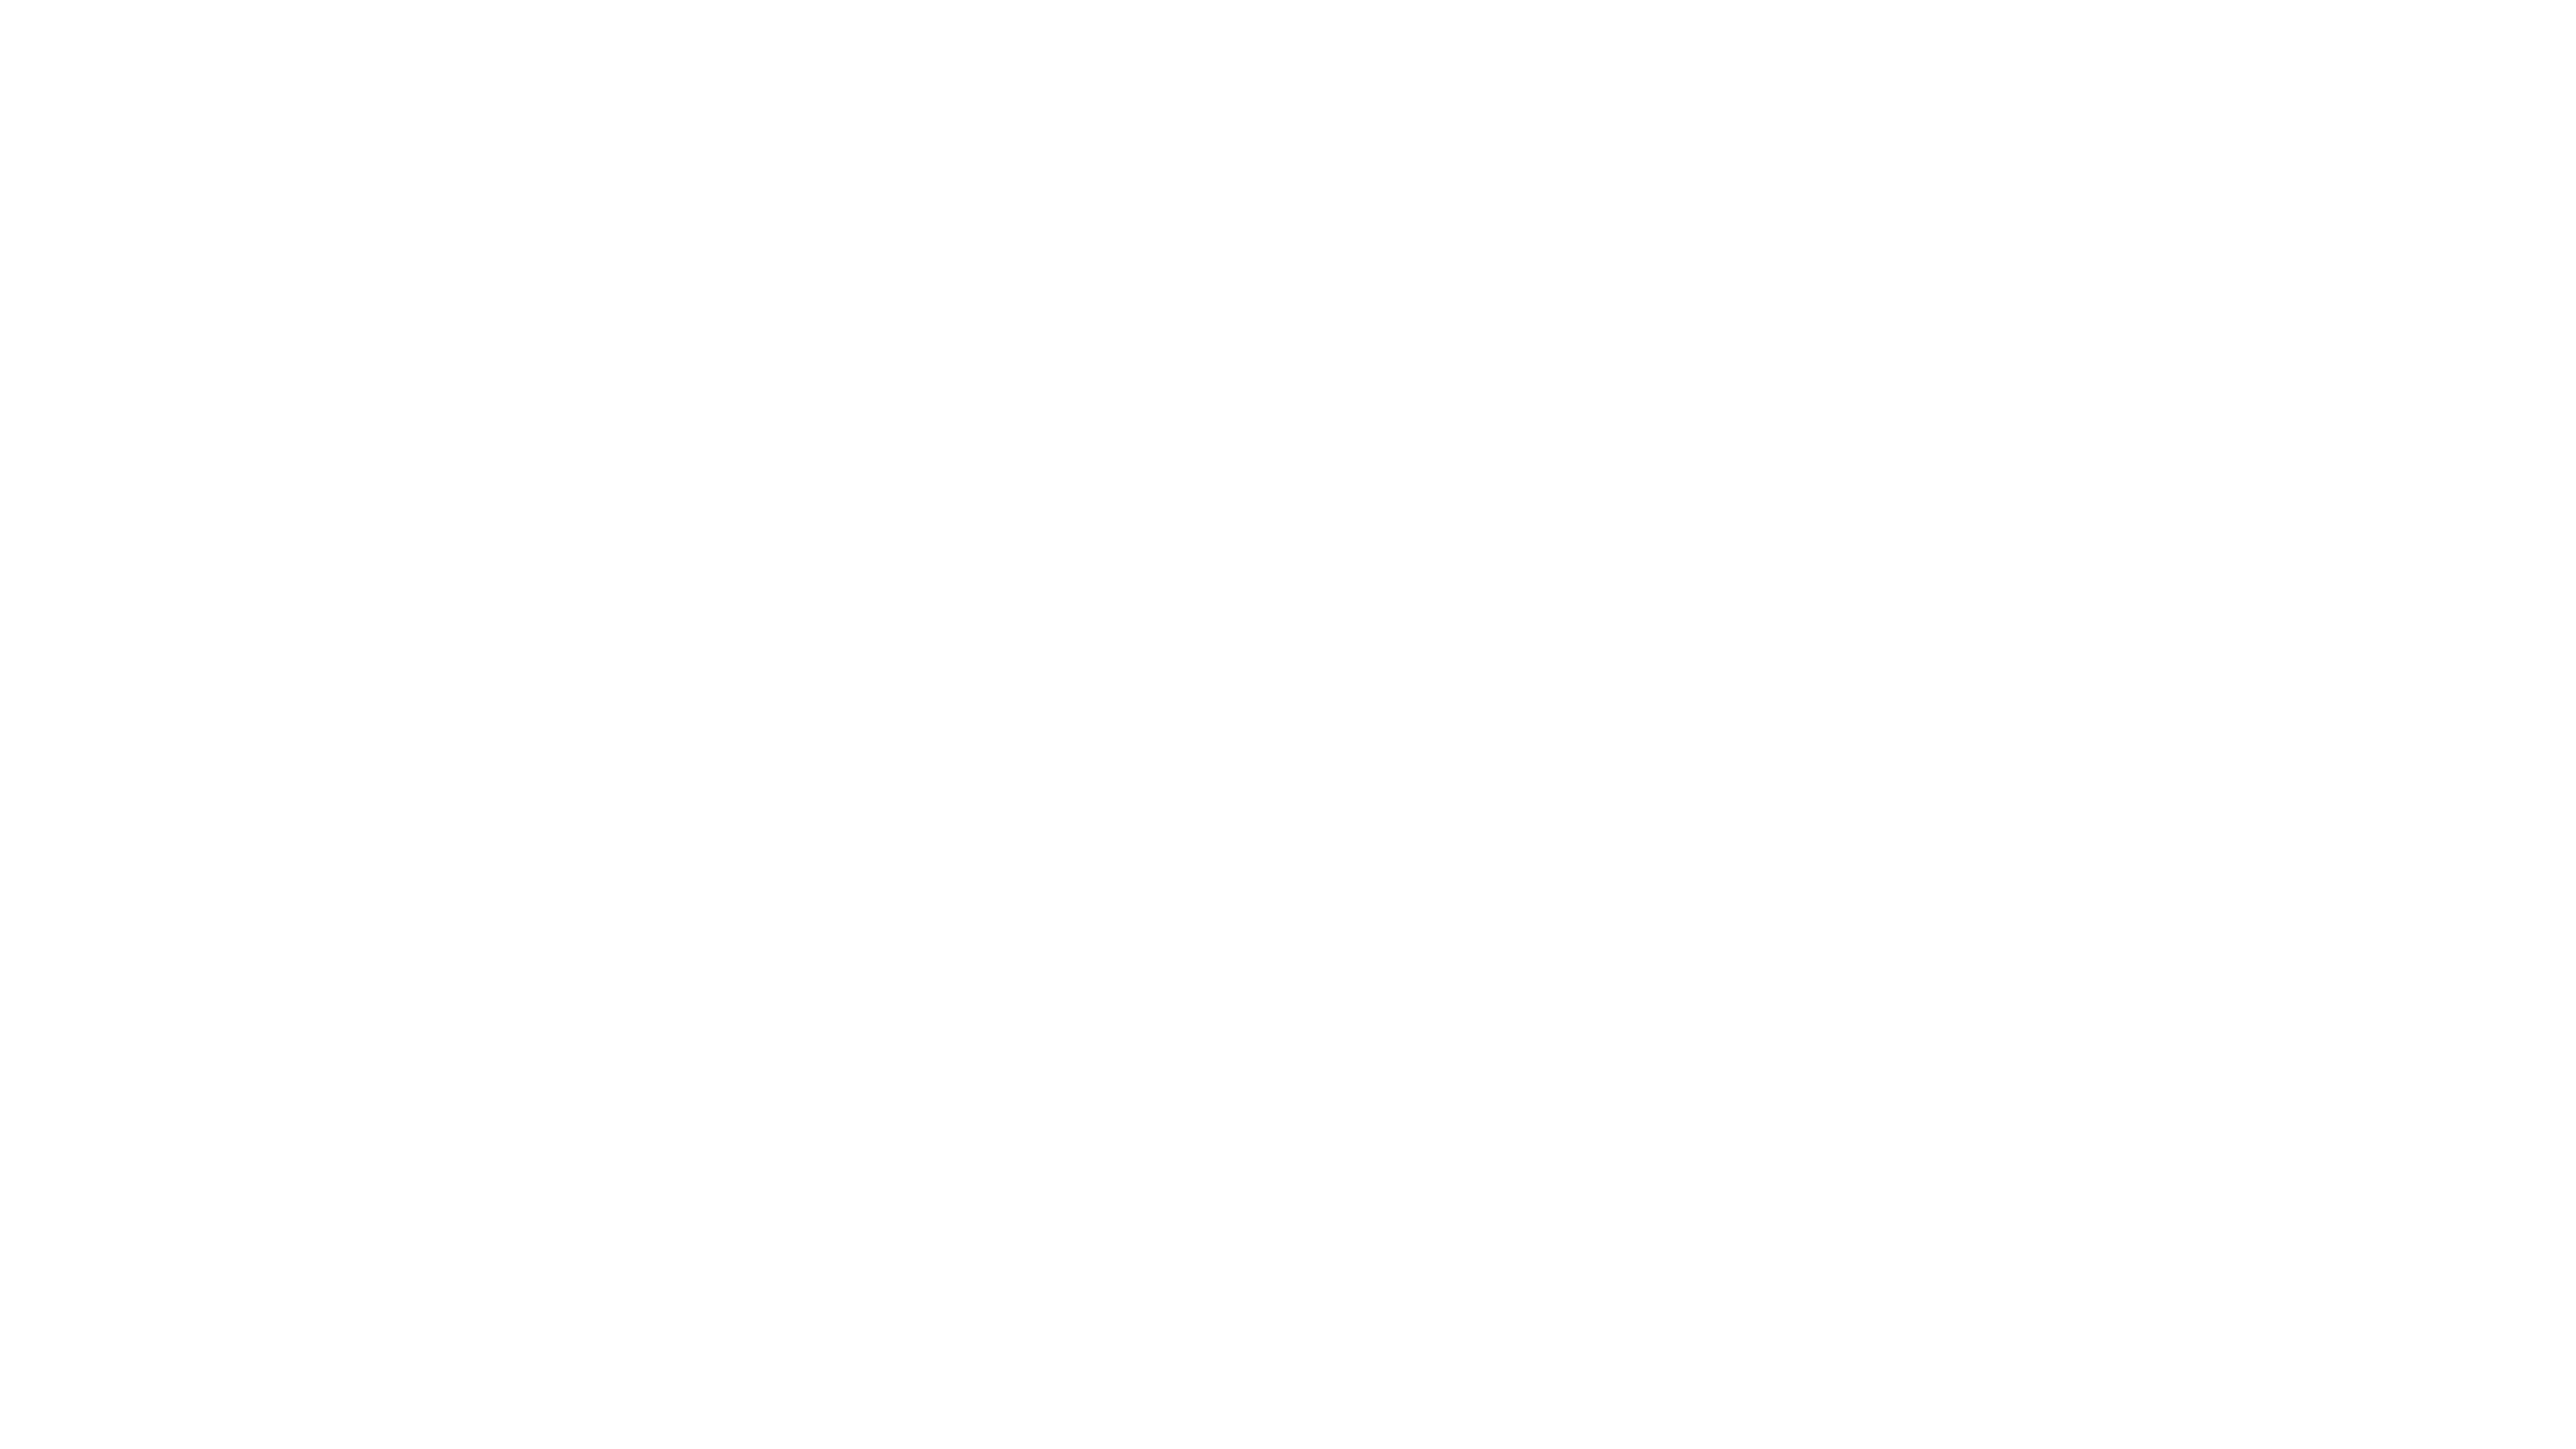 Who's Annie?